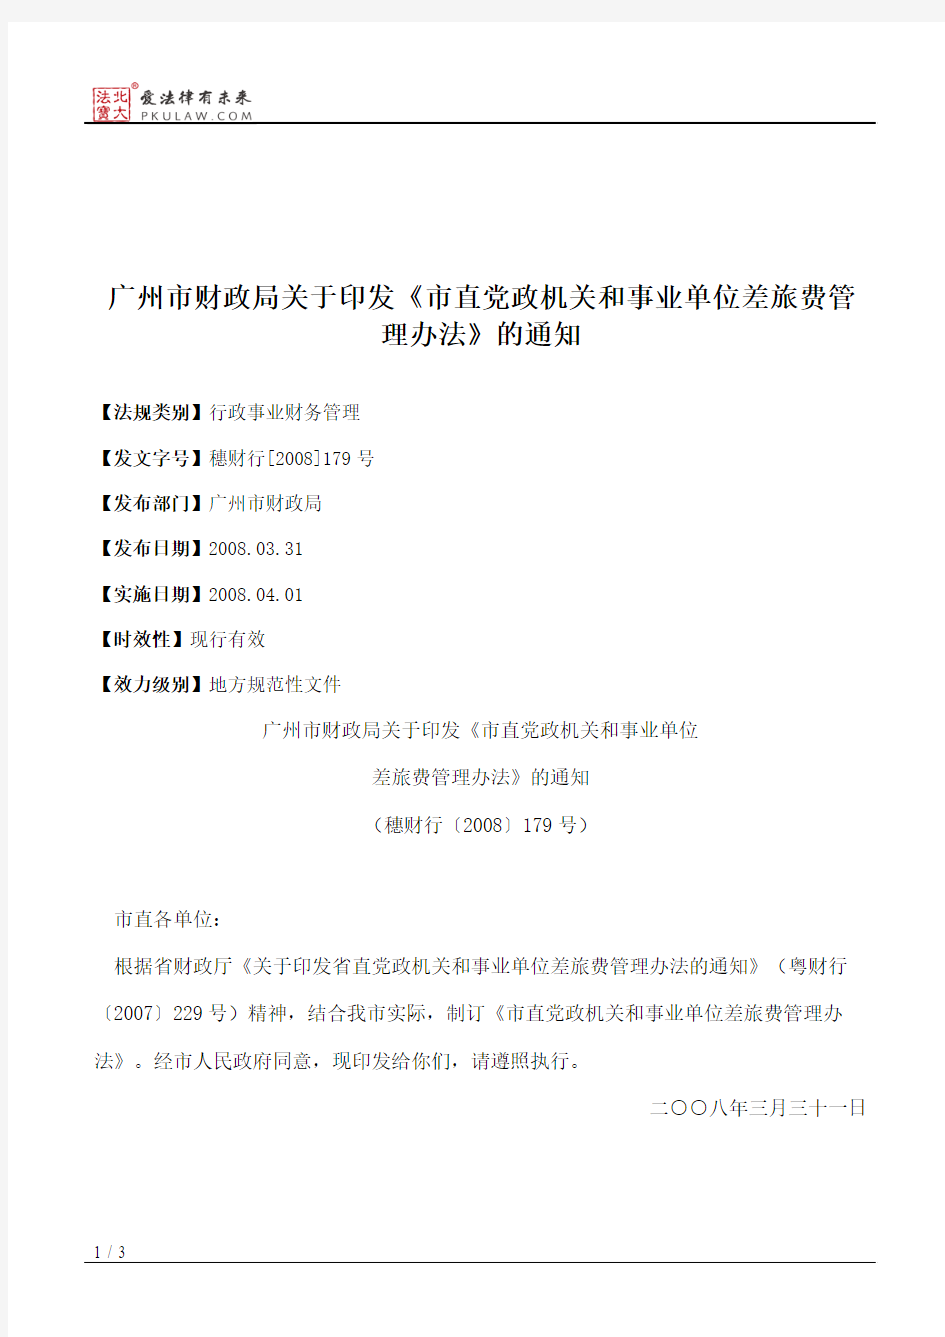 广州市财政局关于印发《市直党政机关和事业单位差旅费管理办法》的通知